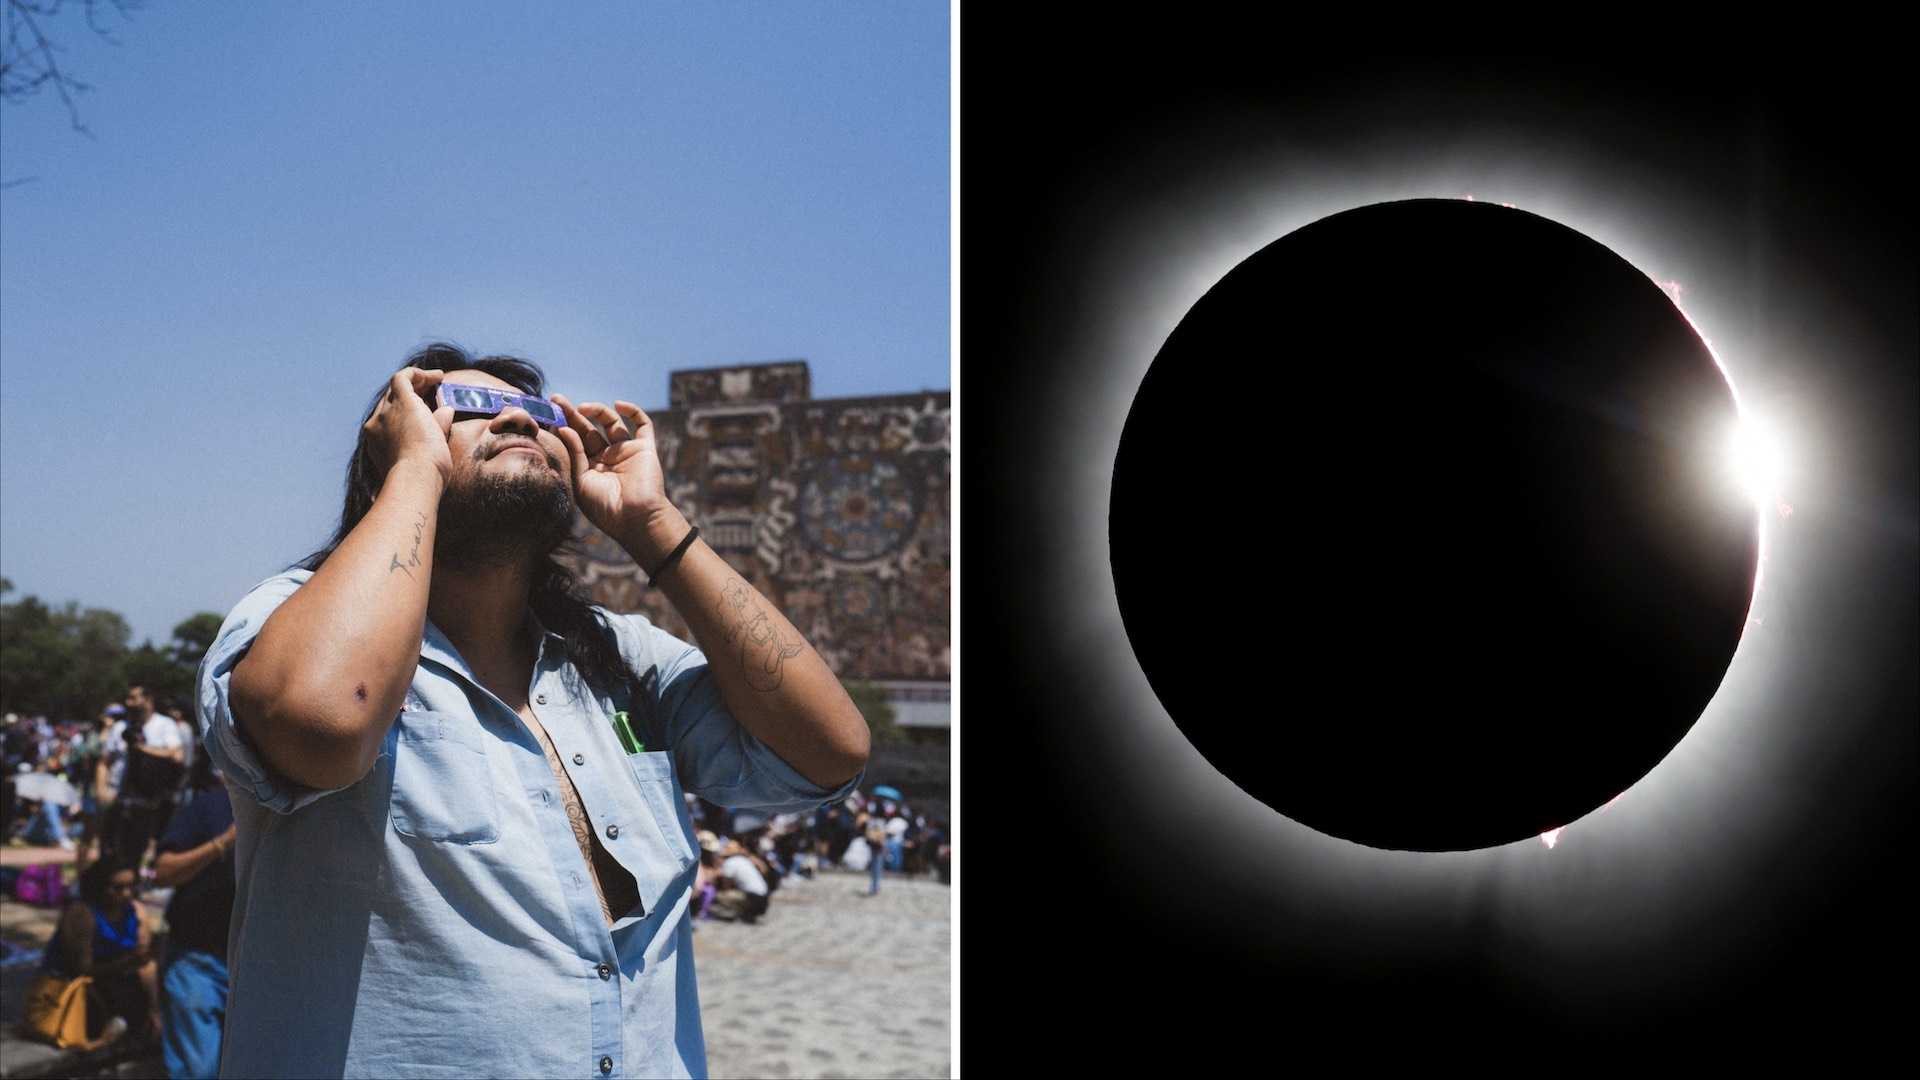 Gente busca en Google dolor de ojos tras eclipse